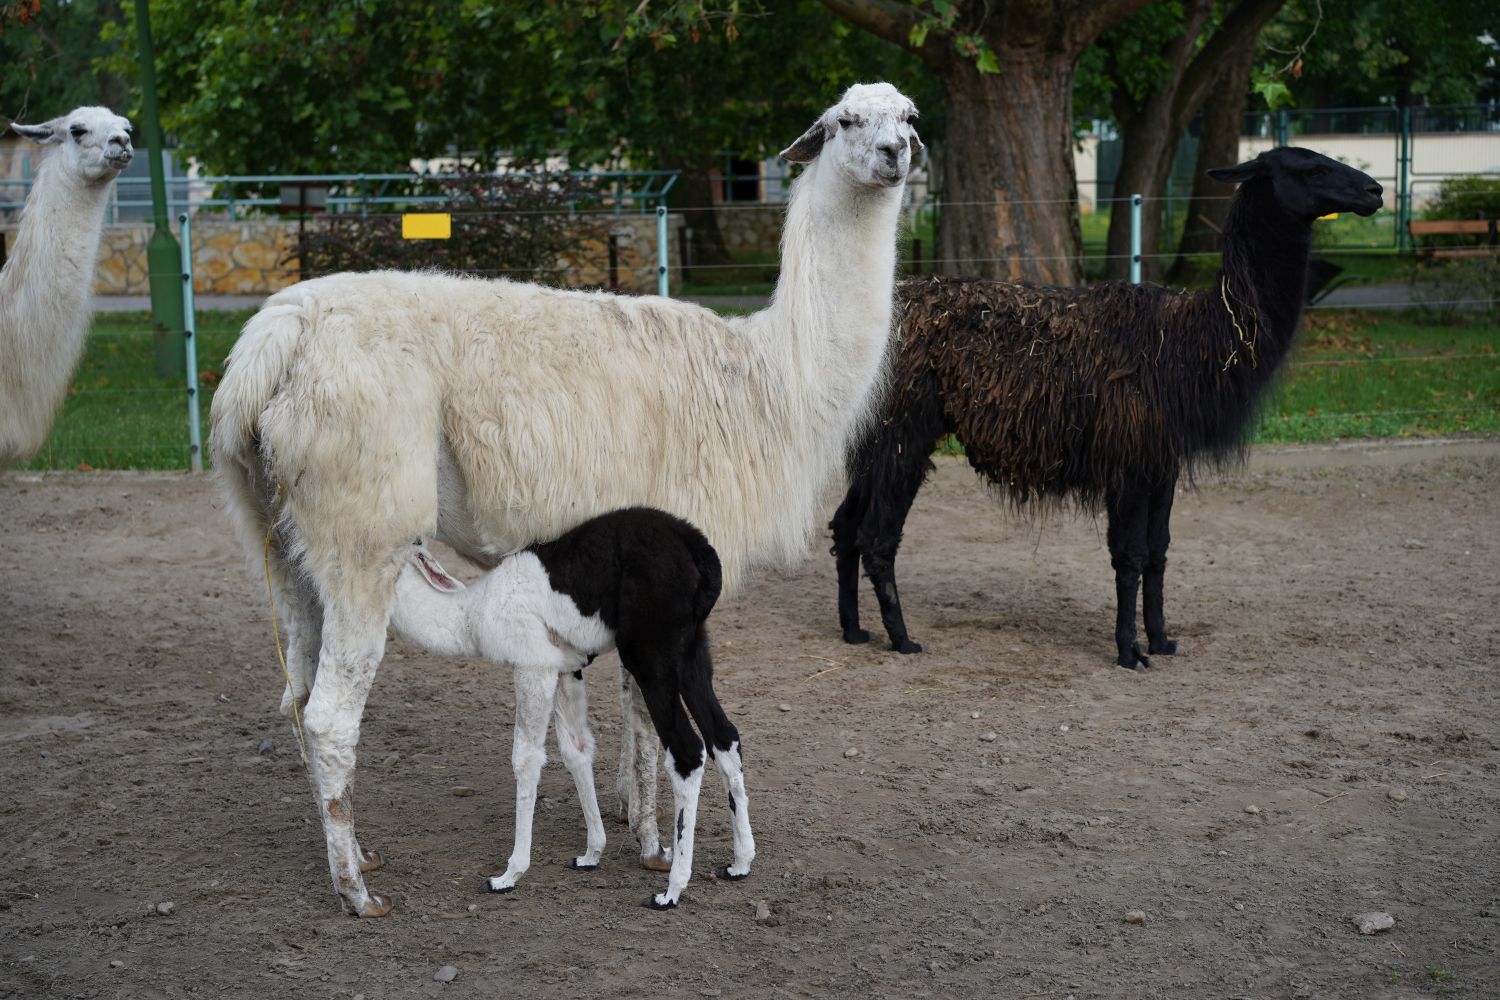 Ще одна новонароджена лама в зоопарку Дебрецена